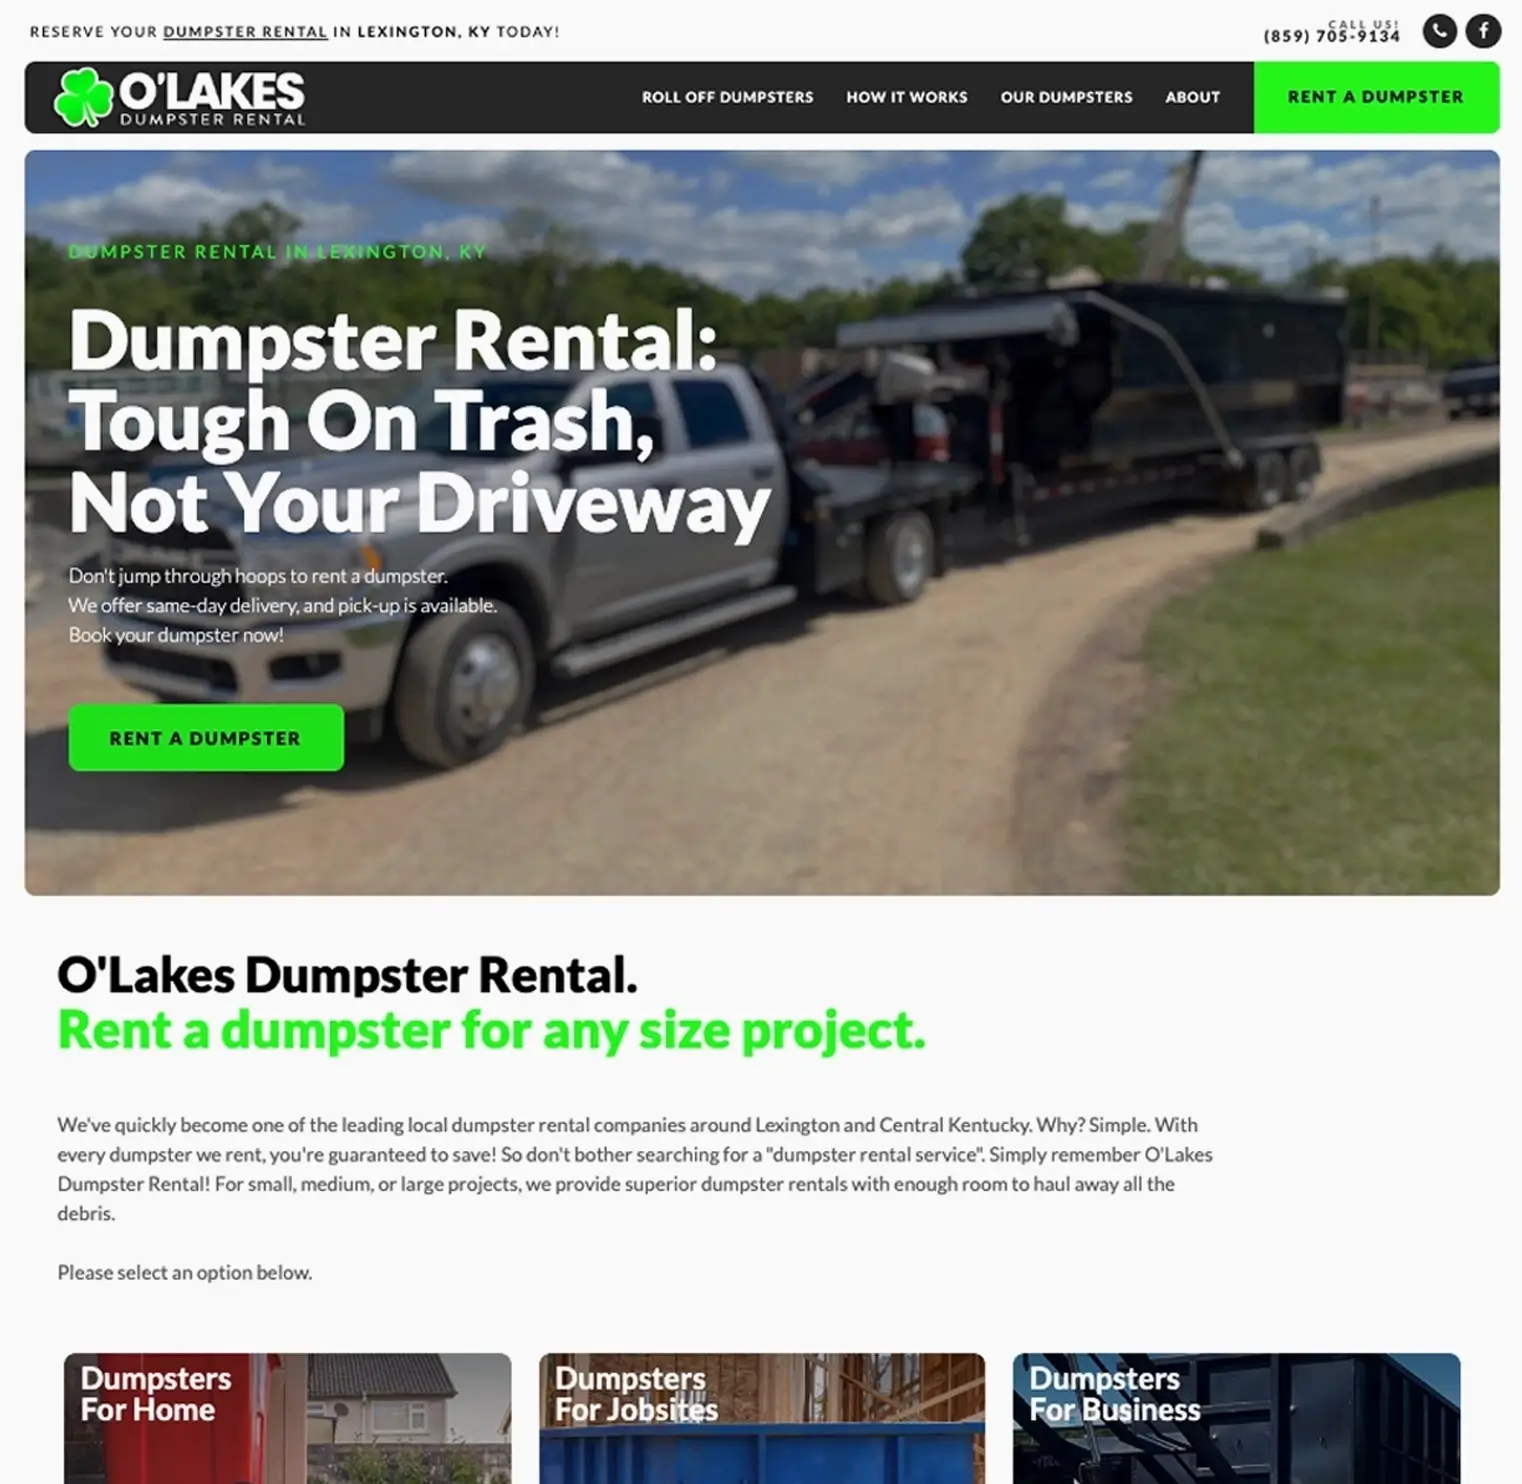 dumpster rental web design